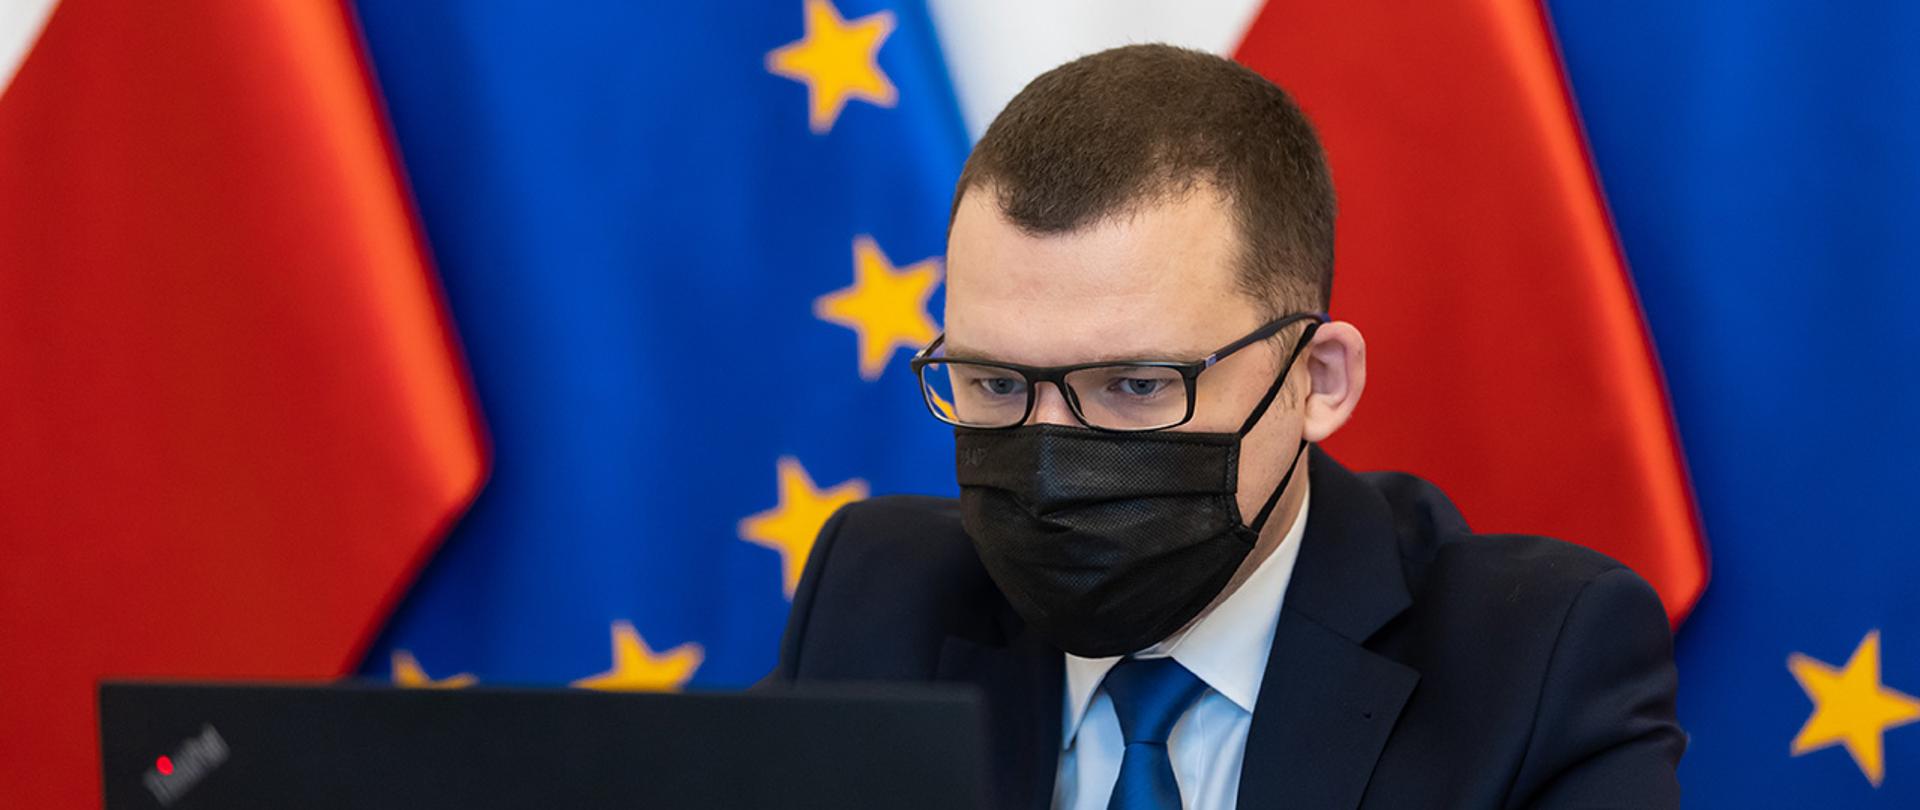 Na zdjęcie widać wiceministra Pawła Szefernakera patrzącego w ekran na tle flag Polski i UE.